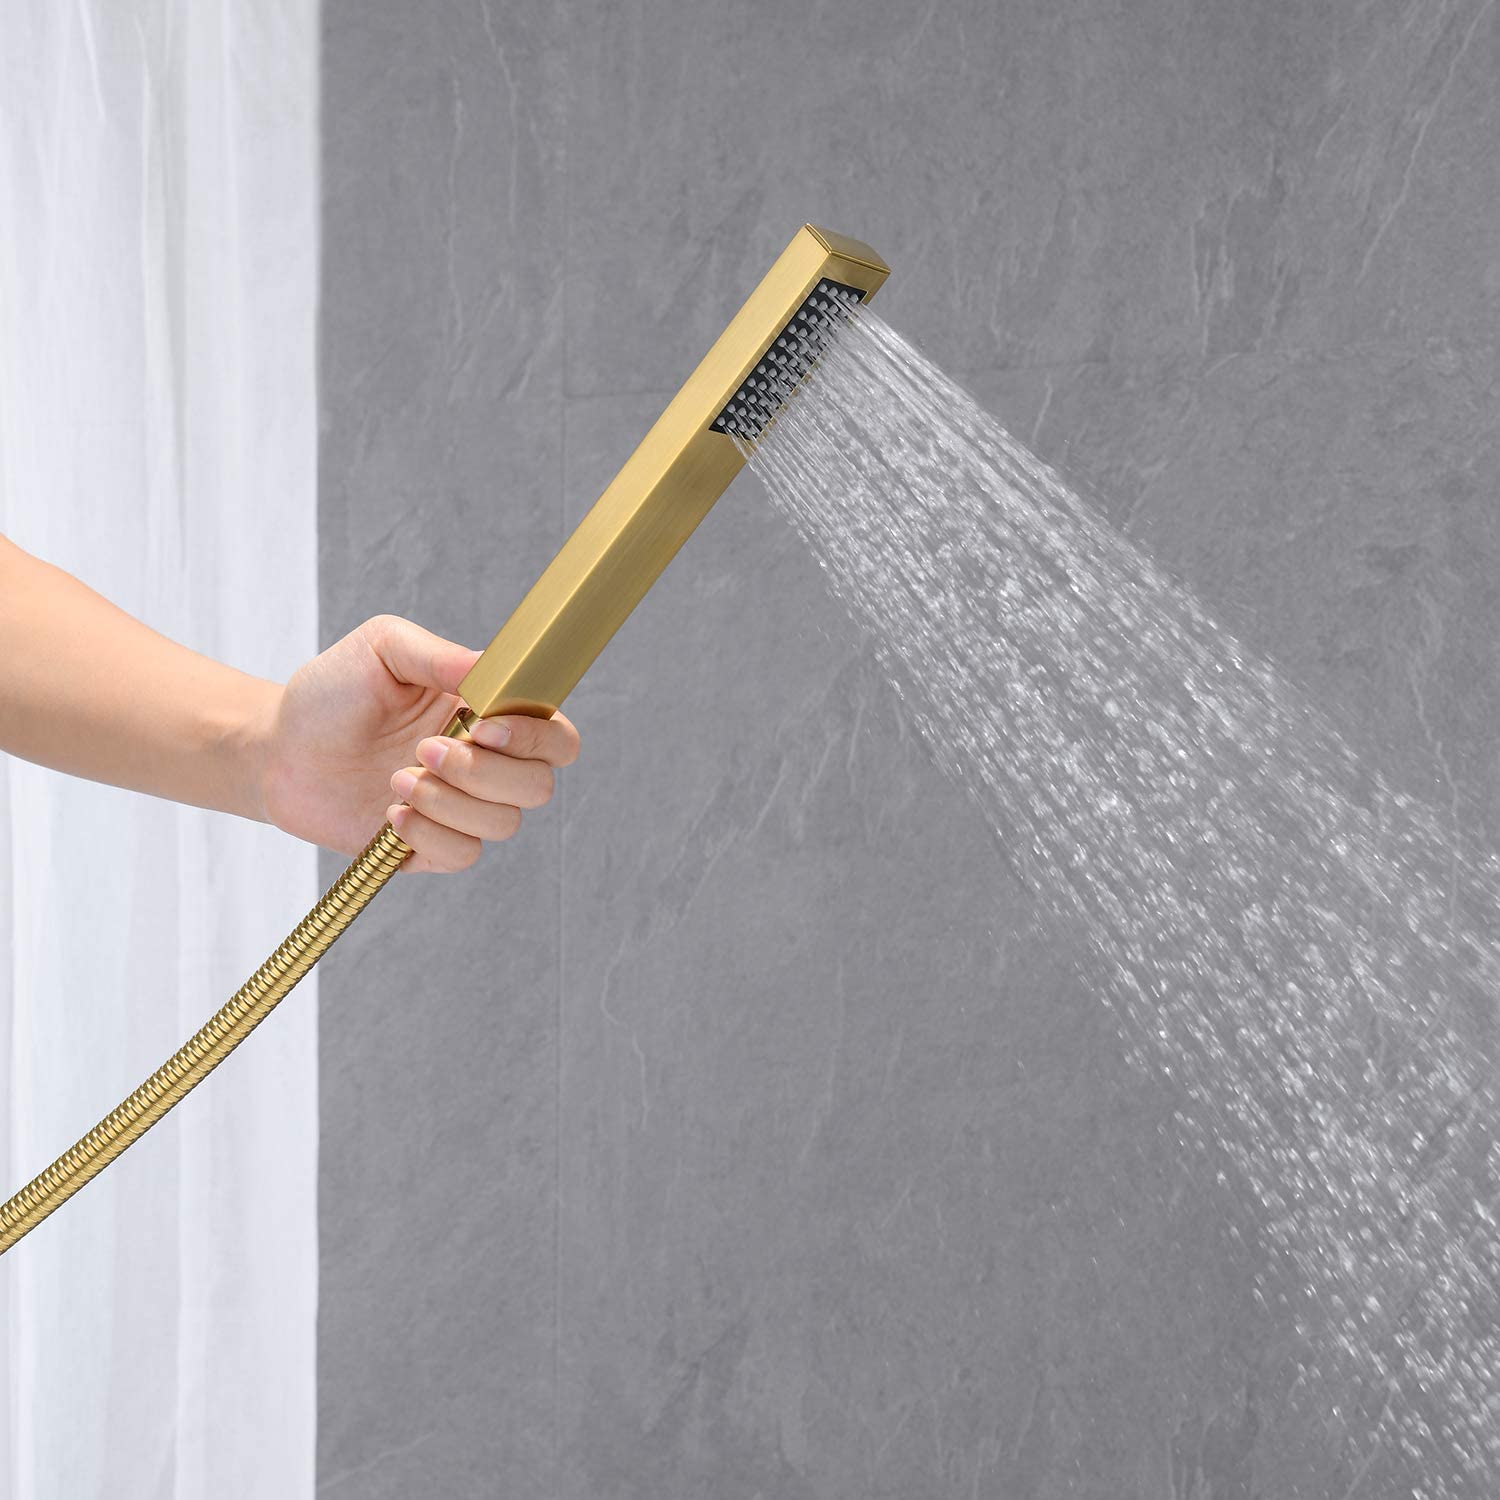 powerful body spray rectangular handheld shower